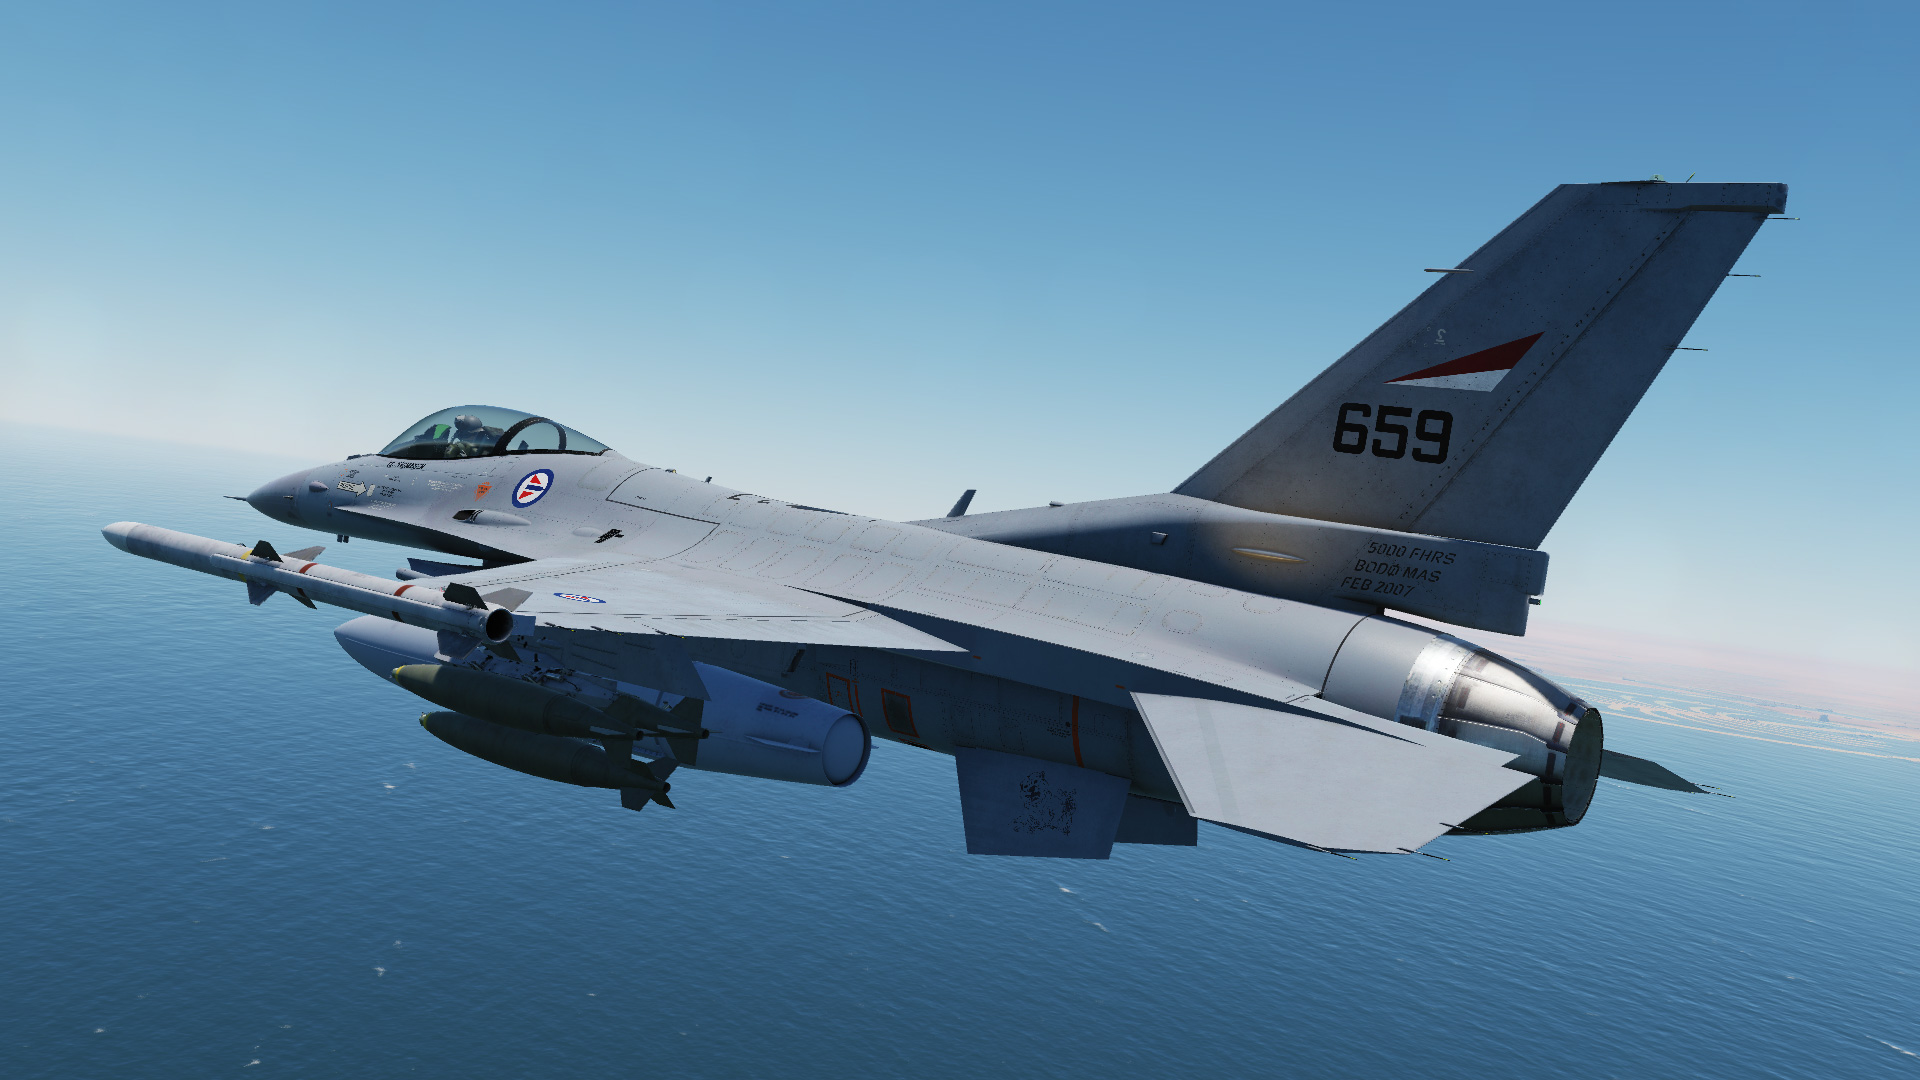 F-16C - RNoAF - 659 - 334 sqn - 2020